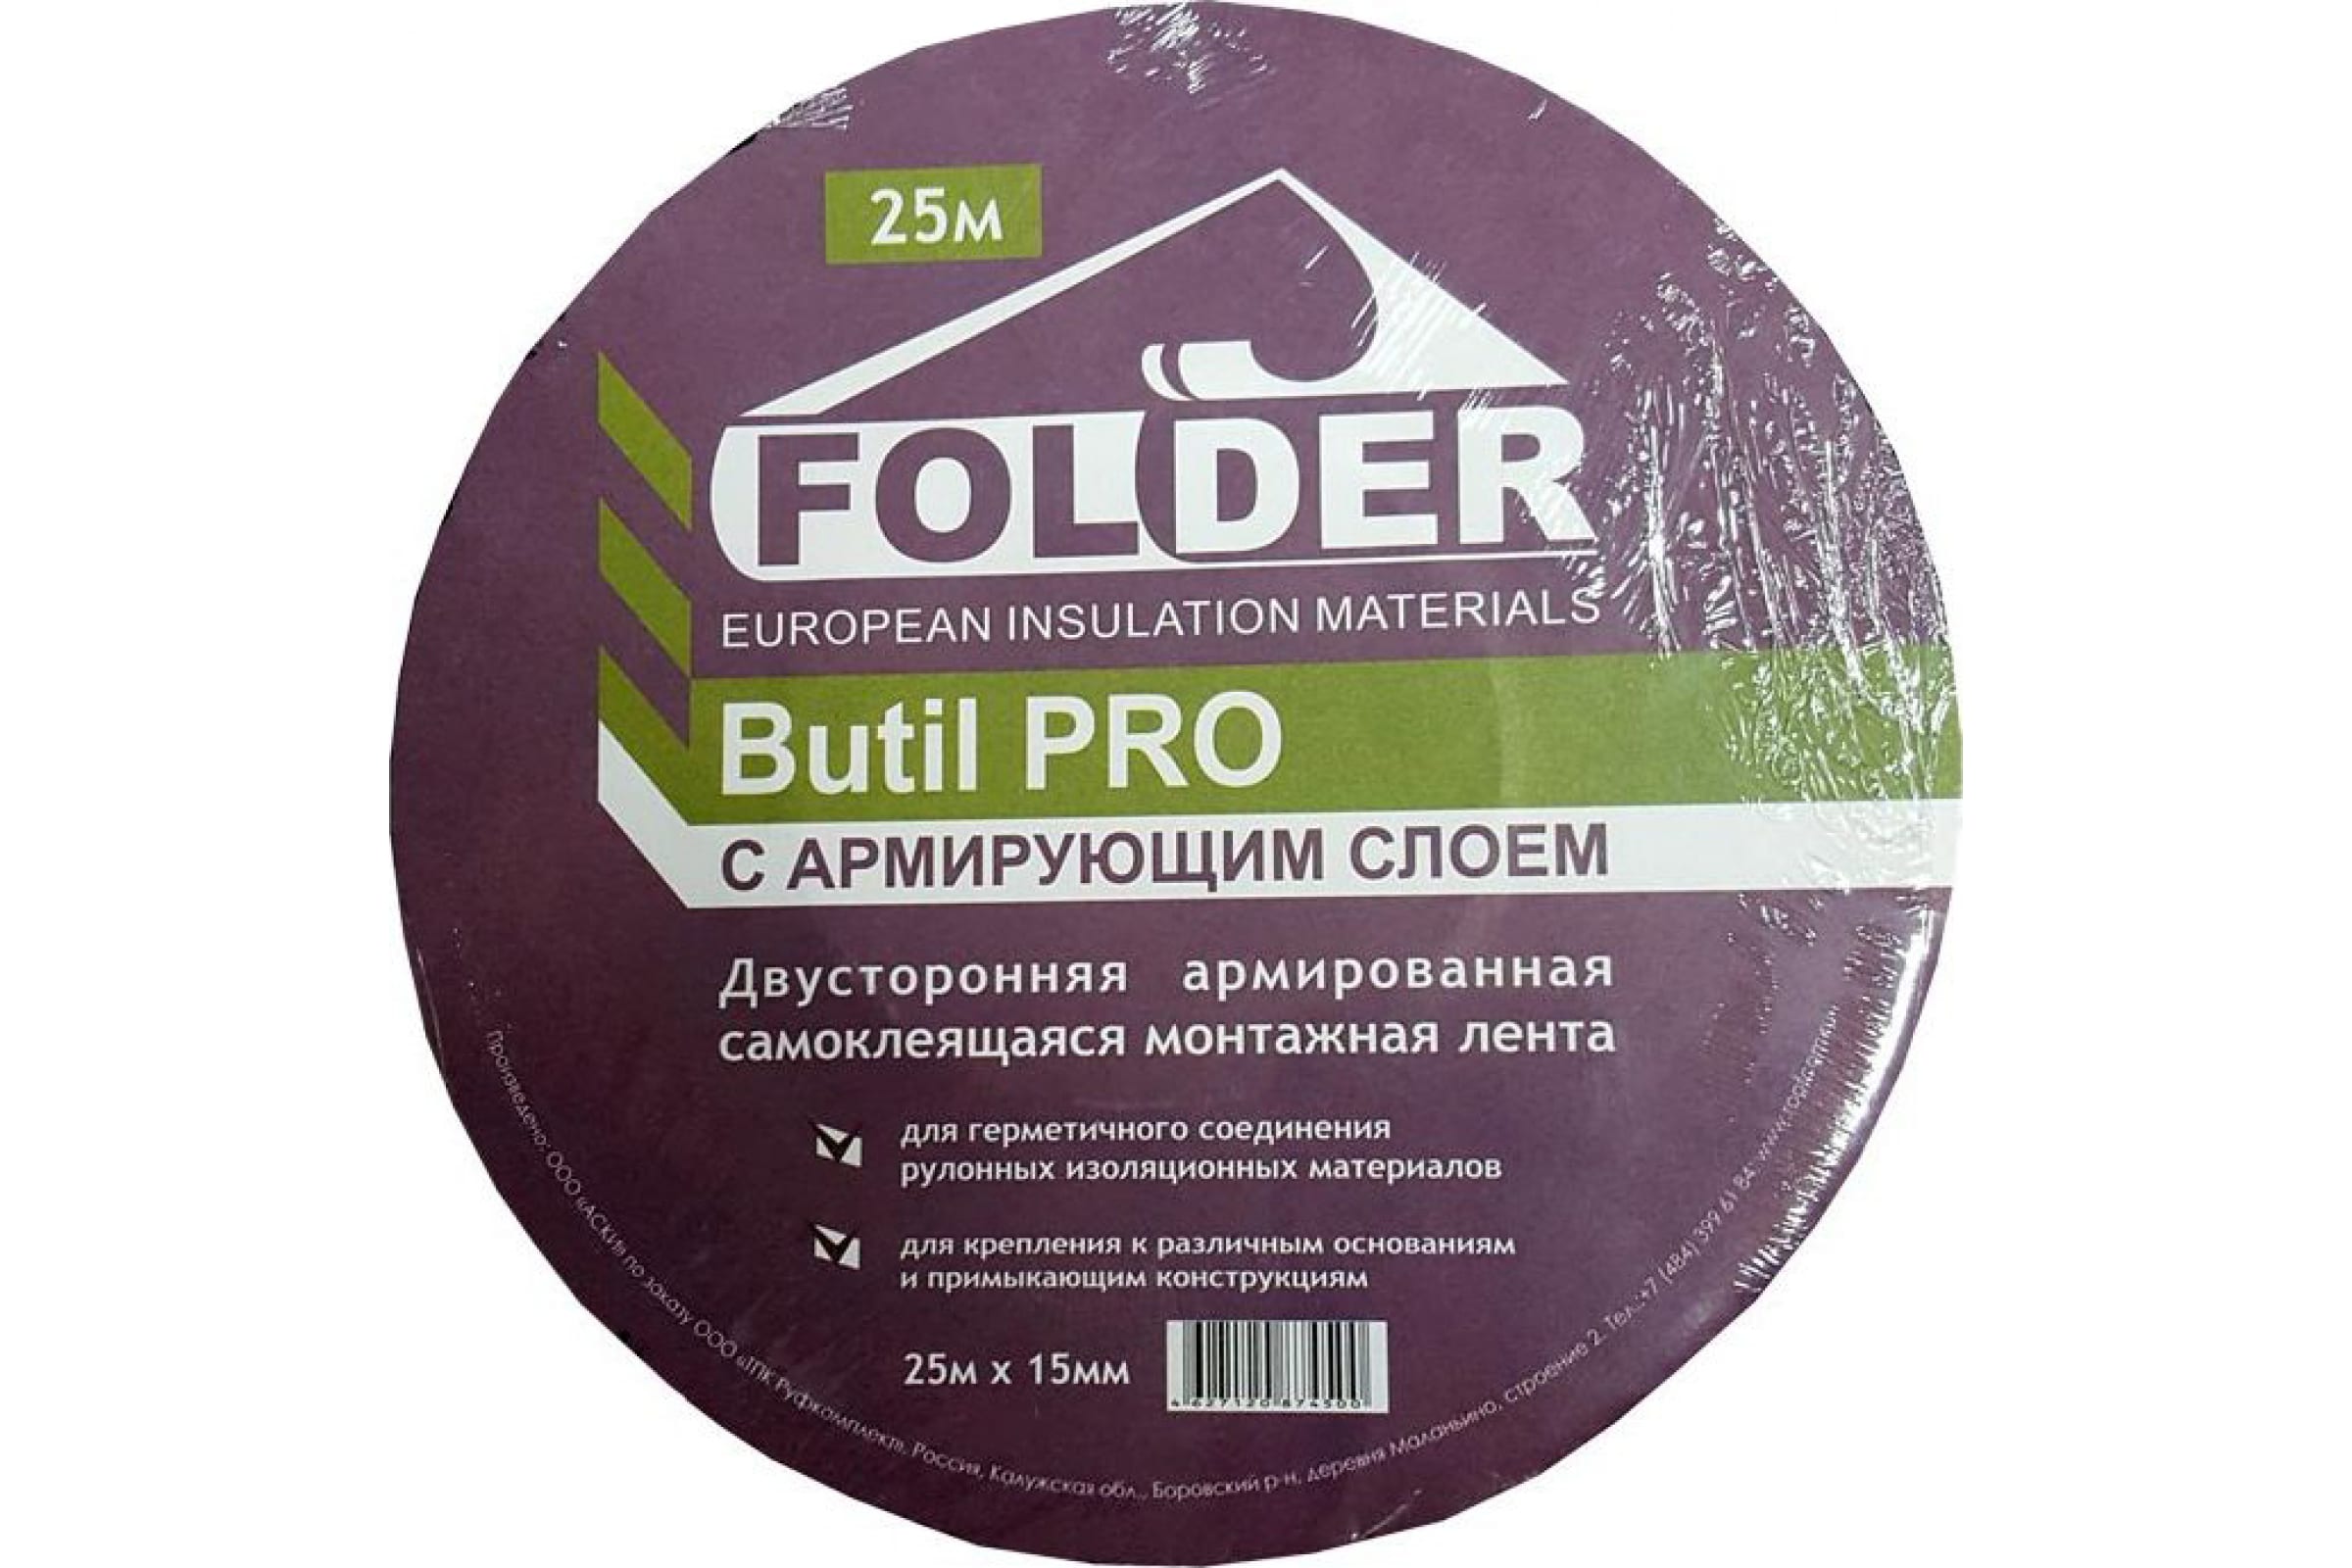  лента Folder Butil Pro 15 мм x 25 м 43754  .